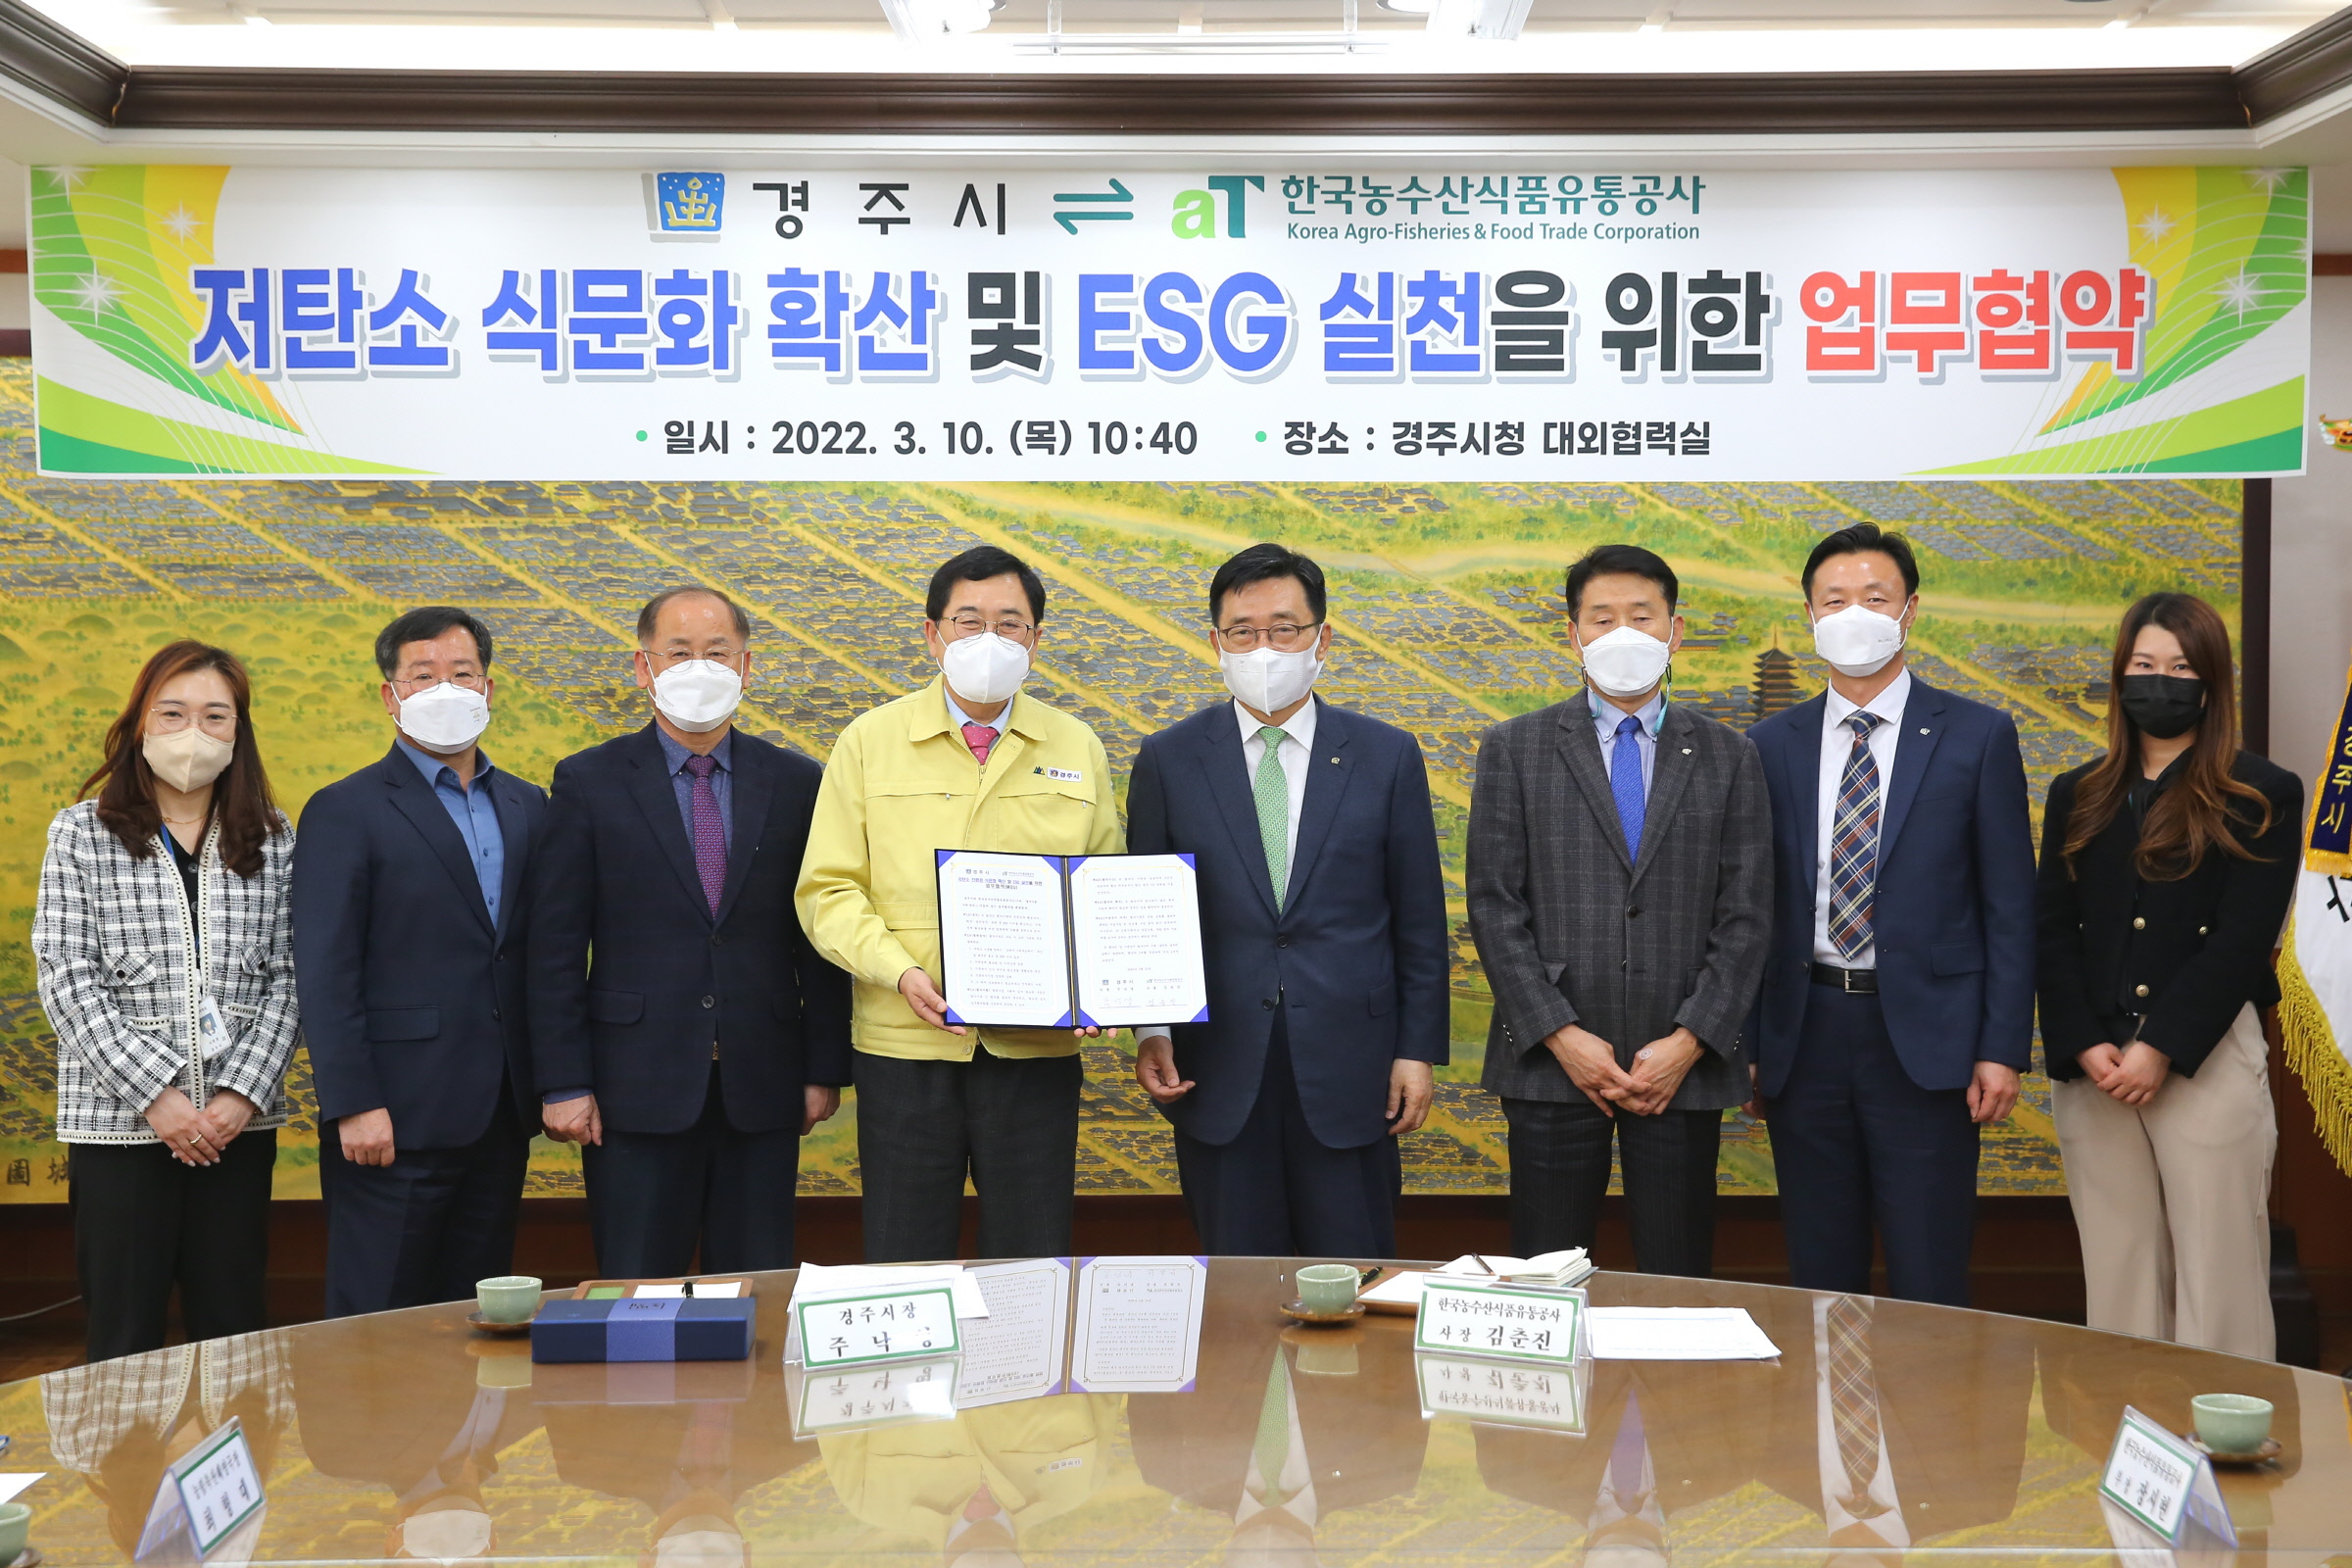 10일 경주시와 한국농수산식품유통공사가 저탄소 식문화 확산 및 ESG 실천을 위한 업무협약을 체결하고 기념촬영을 하고 있다